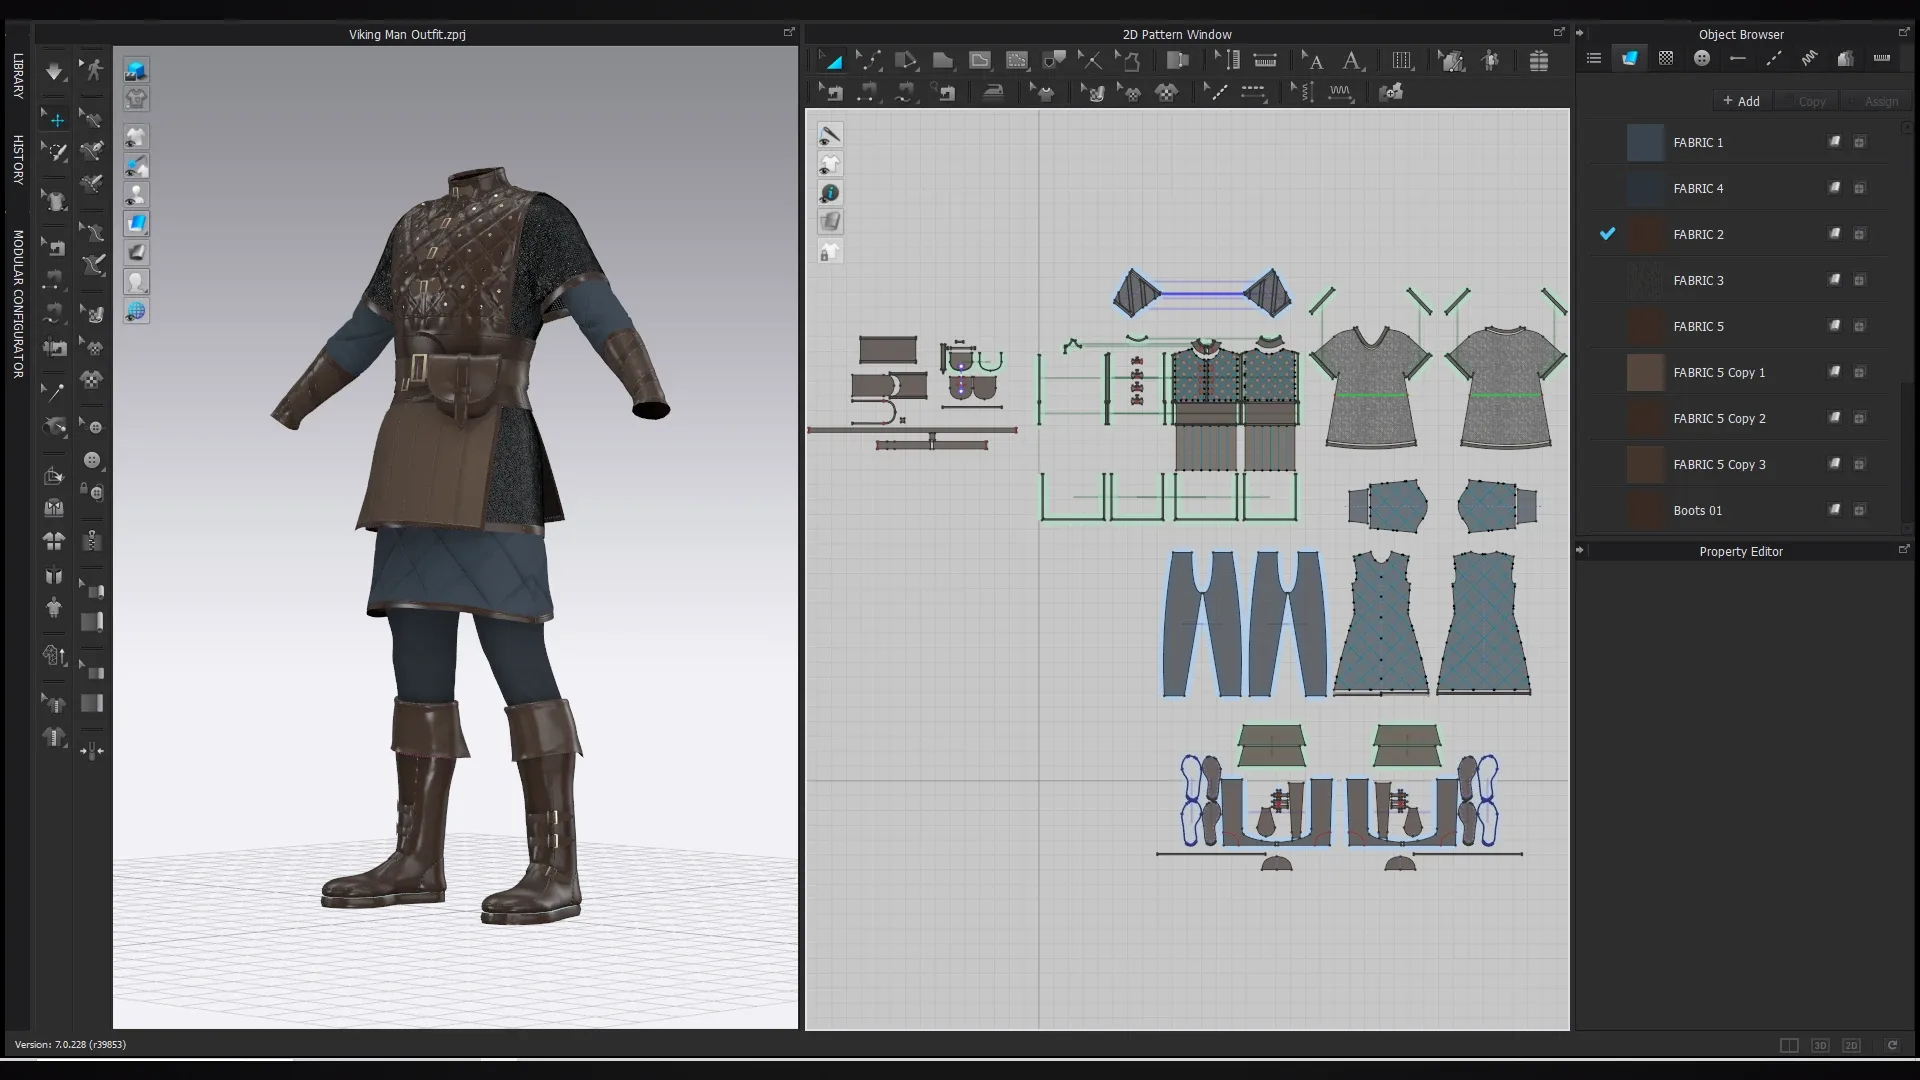 Viking Man Outfit / Marvelous Designer , Clo3d Project + OBJ , FBX (Low Poly)